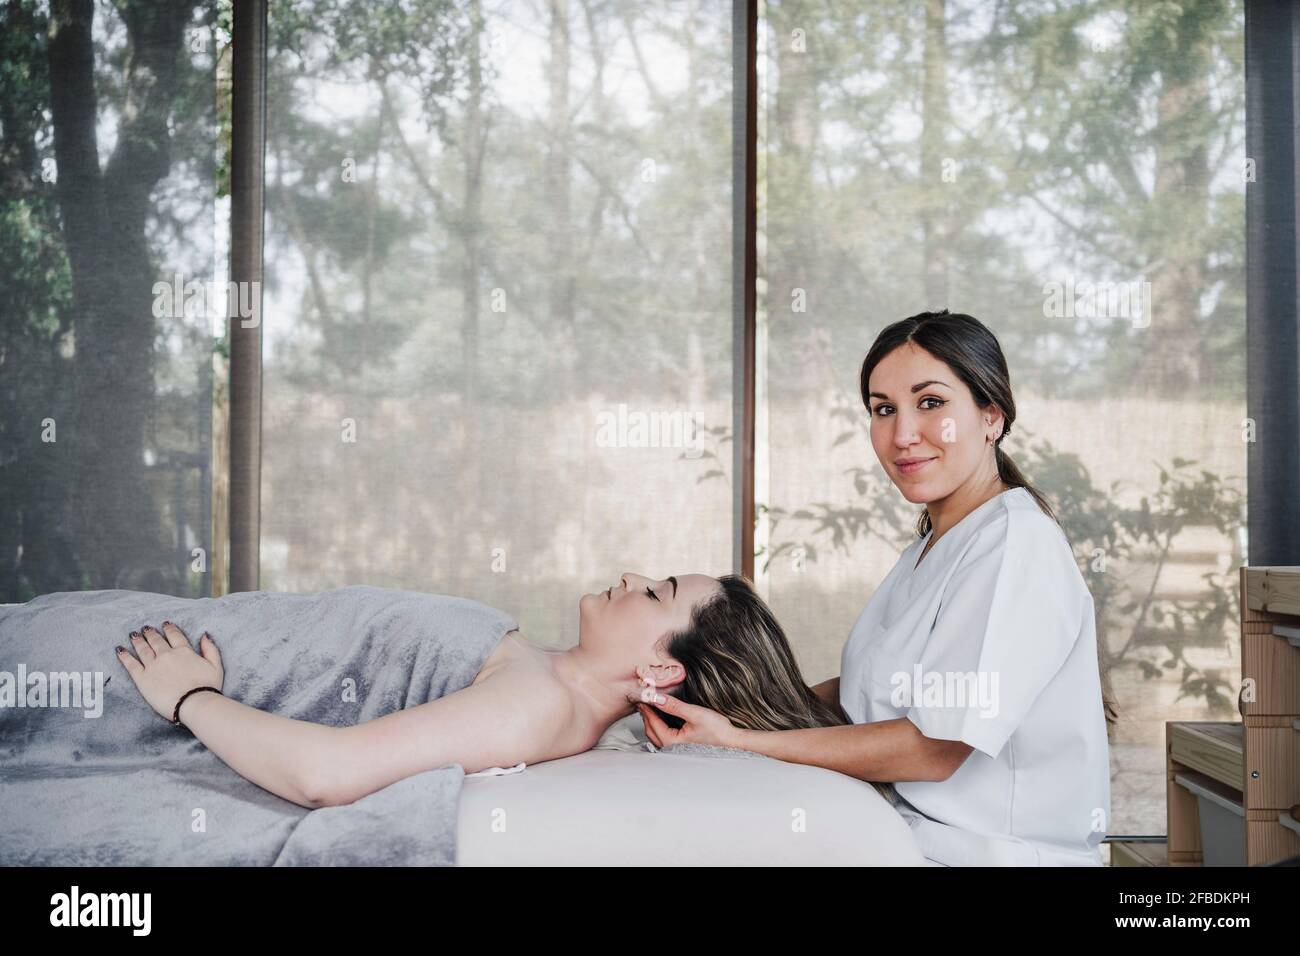 Fisioterapeuta femenina que masajea la cabeza de la paciente acostada sobre la mesa en el hospital Foto de stock